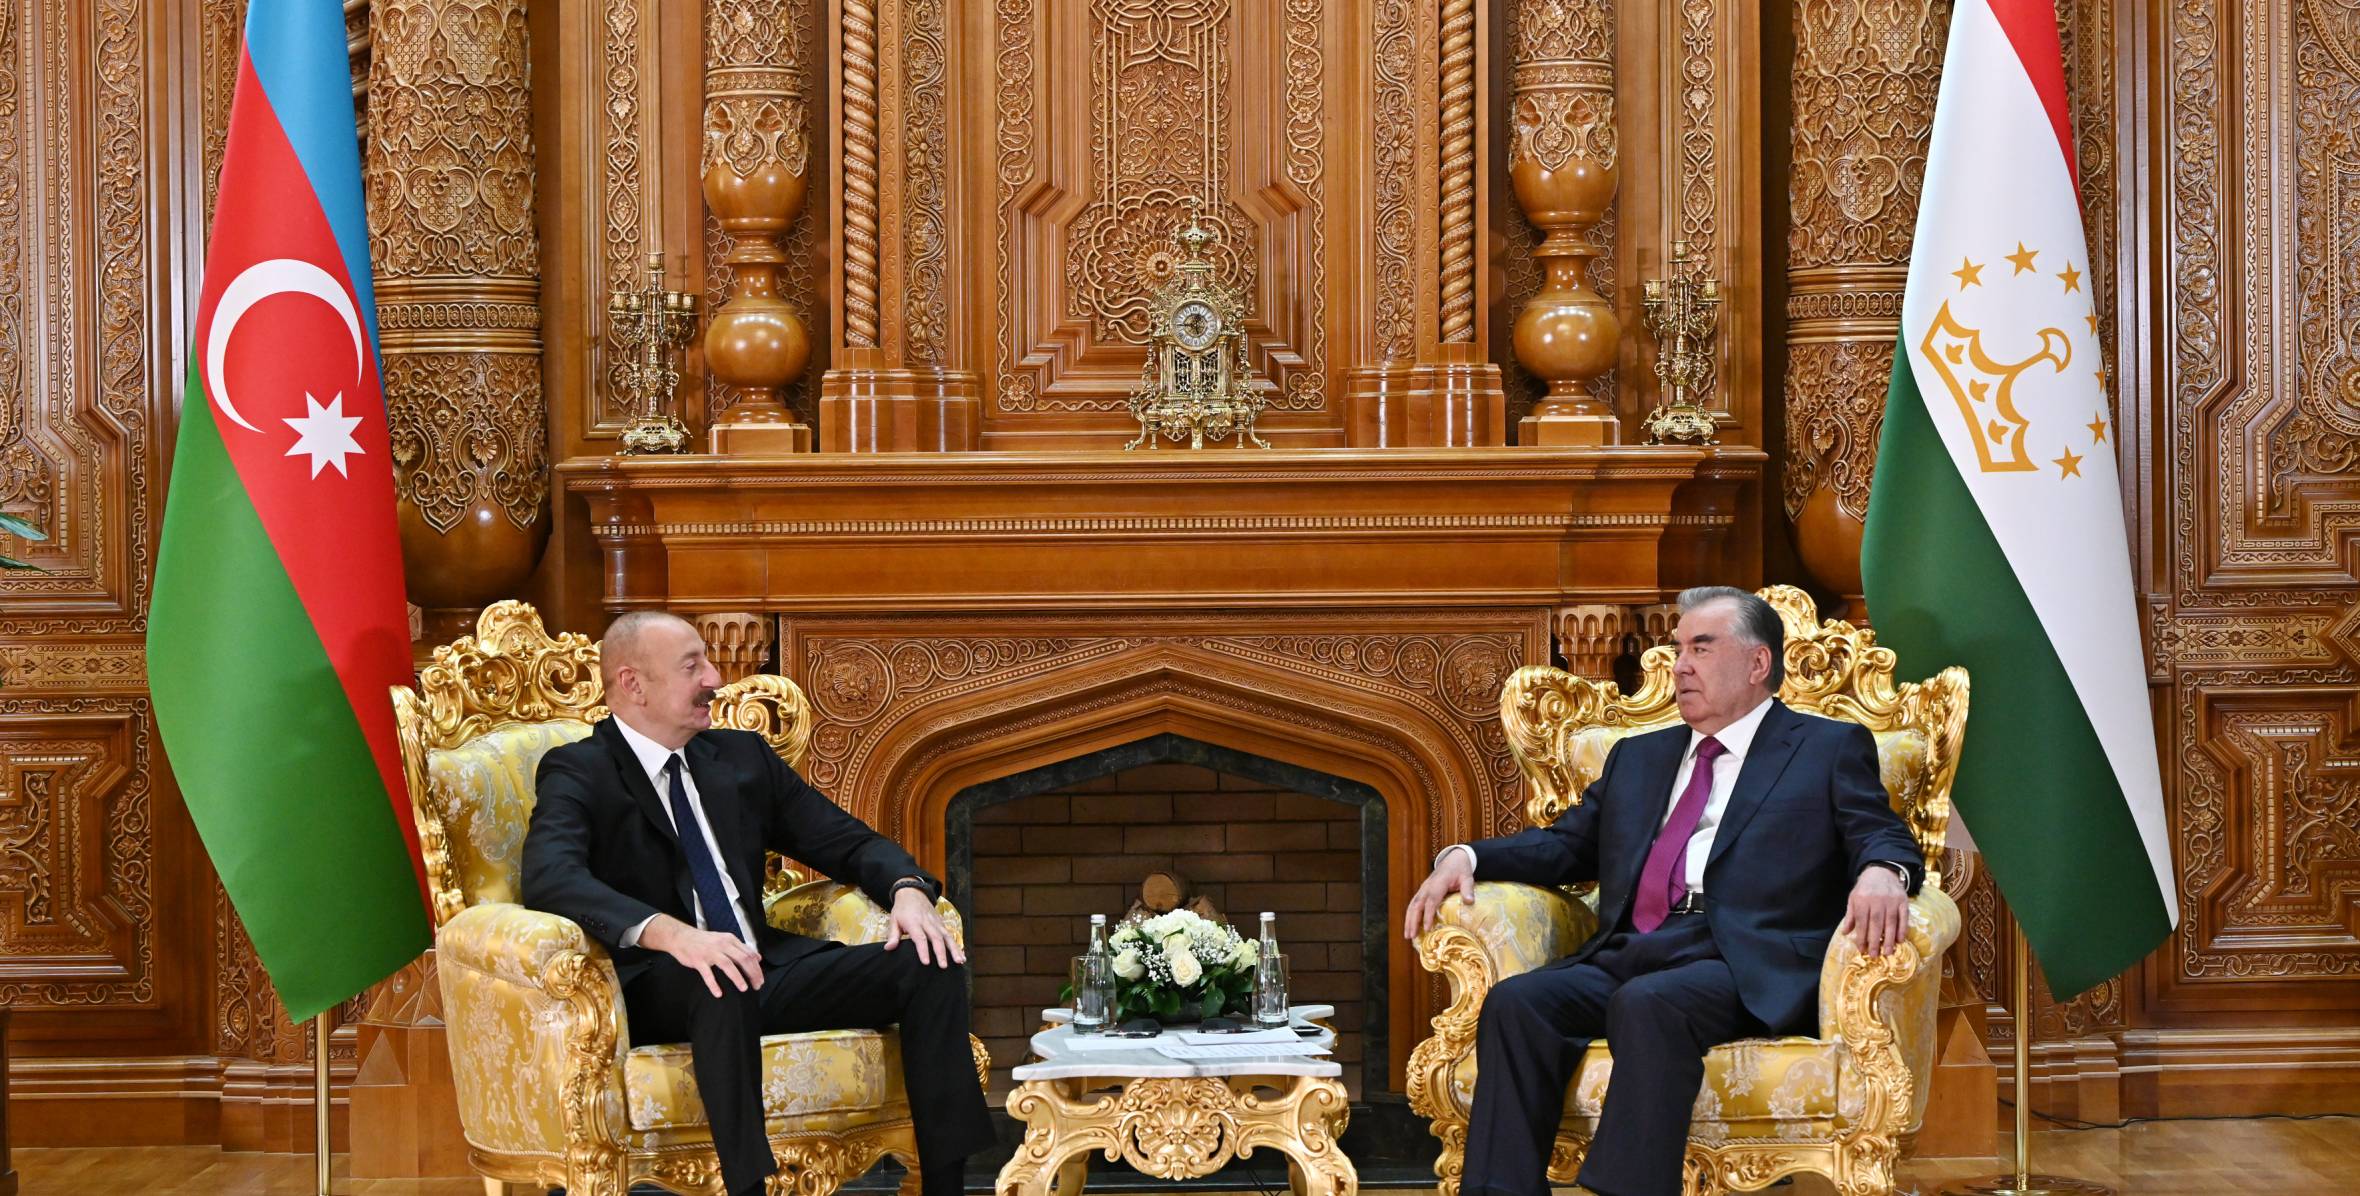 В Душанбе состоялась встреча Ильхама Алиева и Президента Таджикистана Эмомали Рахмона один на один